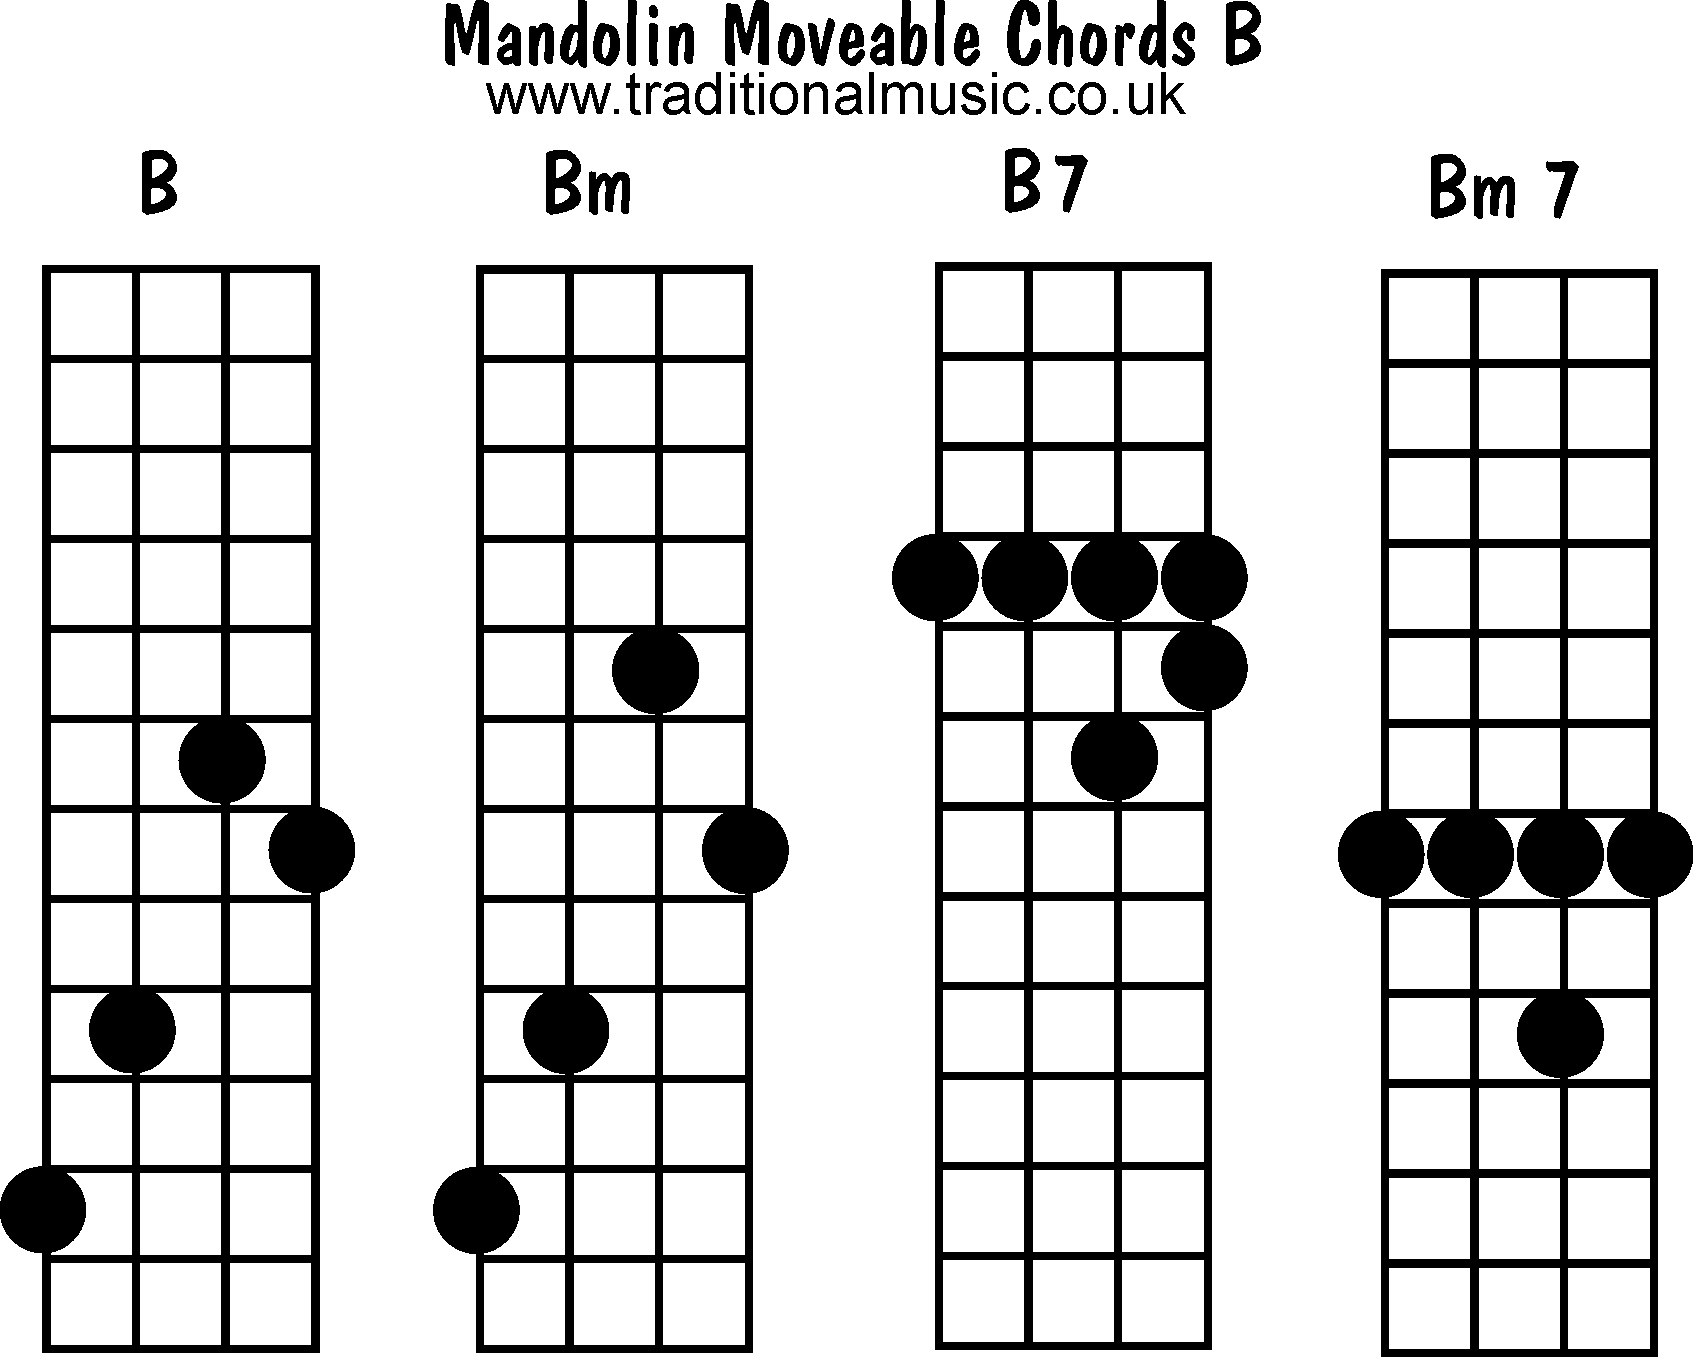 Bm7 Guitar Chord Mandolin Chords Moveable B Bm B7 Bm7